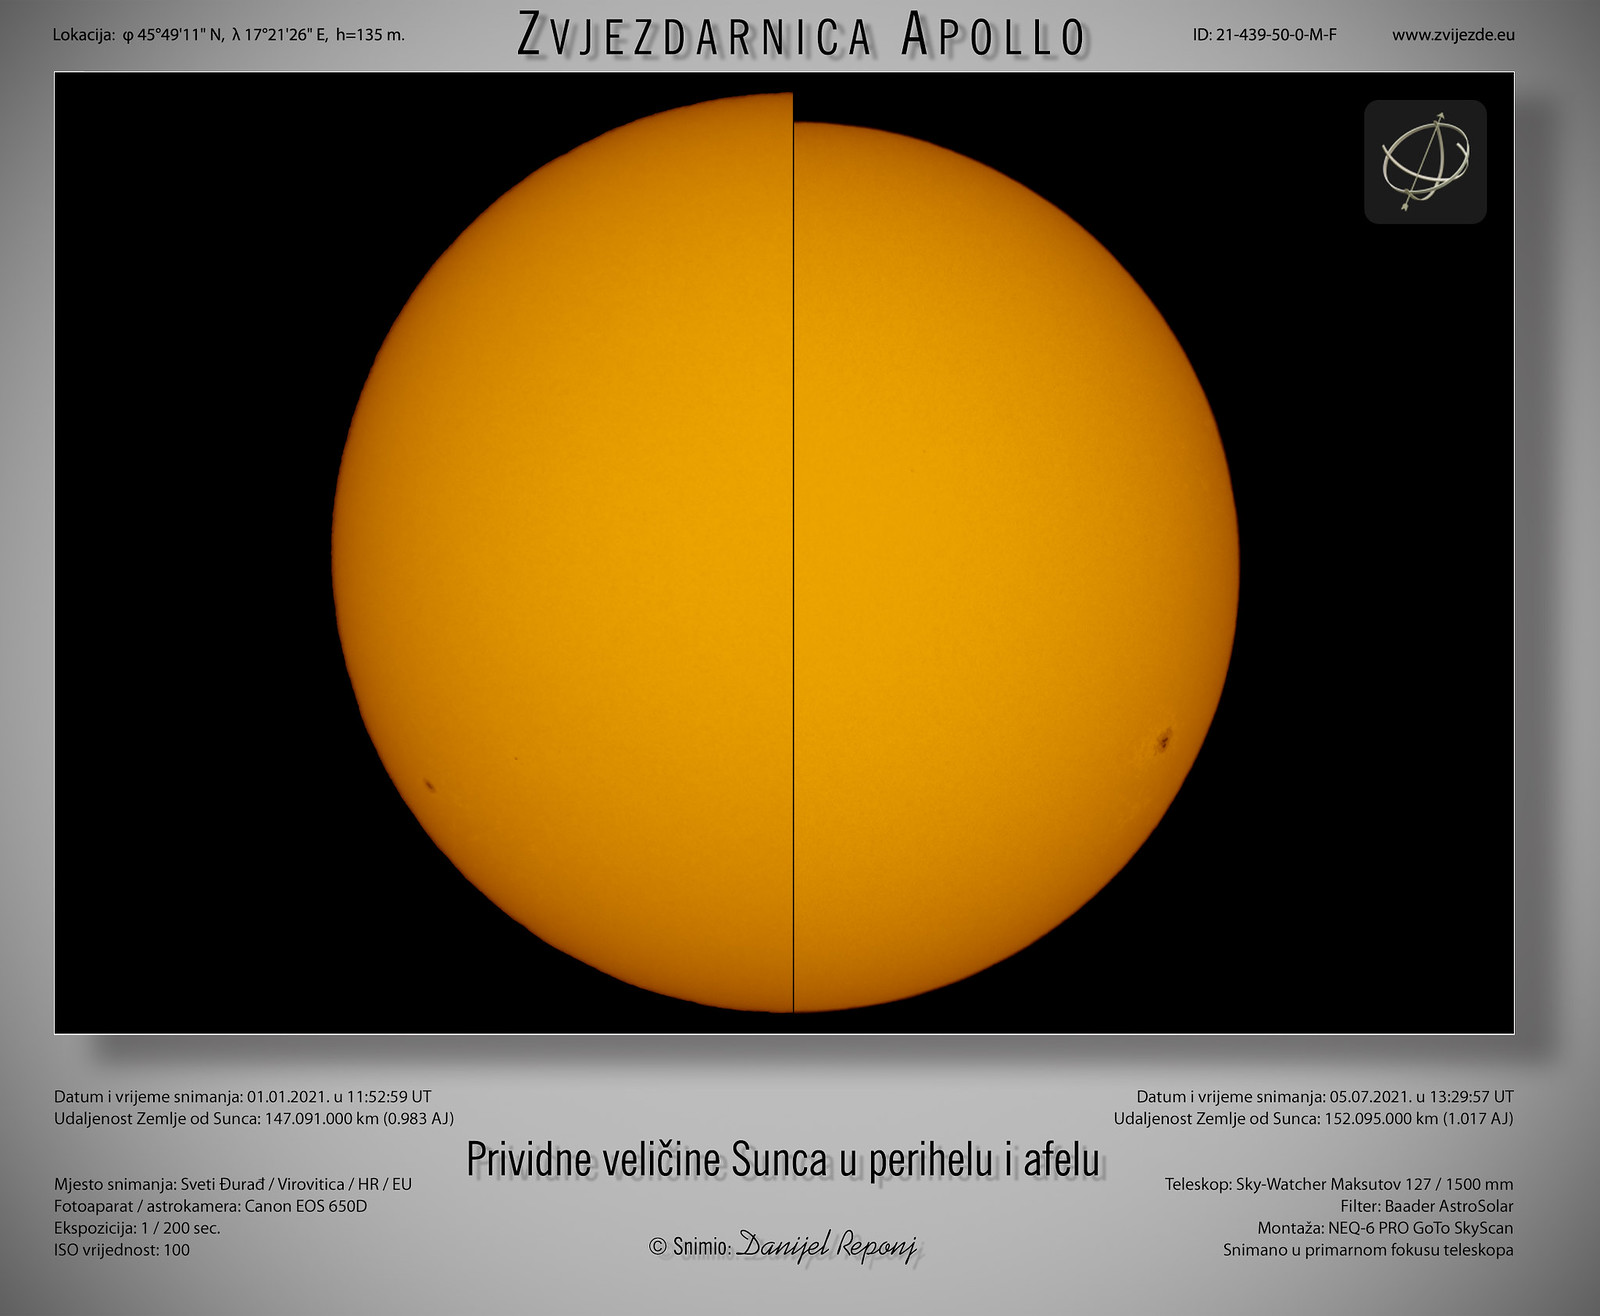 Prividne veličine Sunca u perihelu i afelu, 5.7.2021.